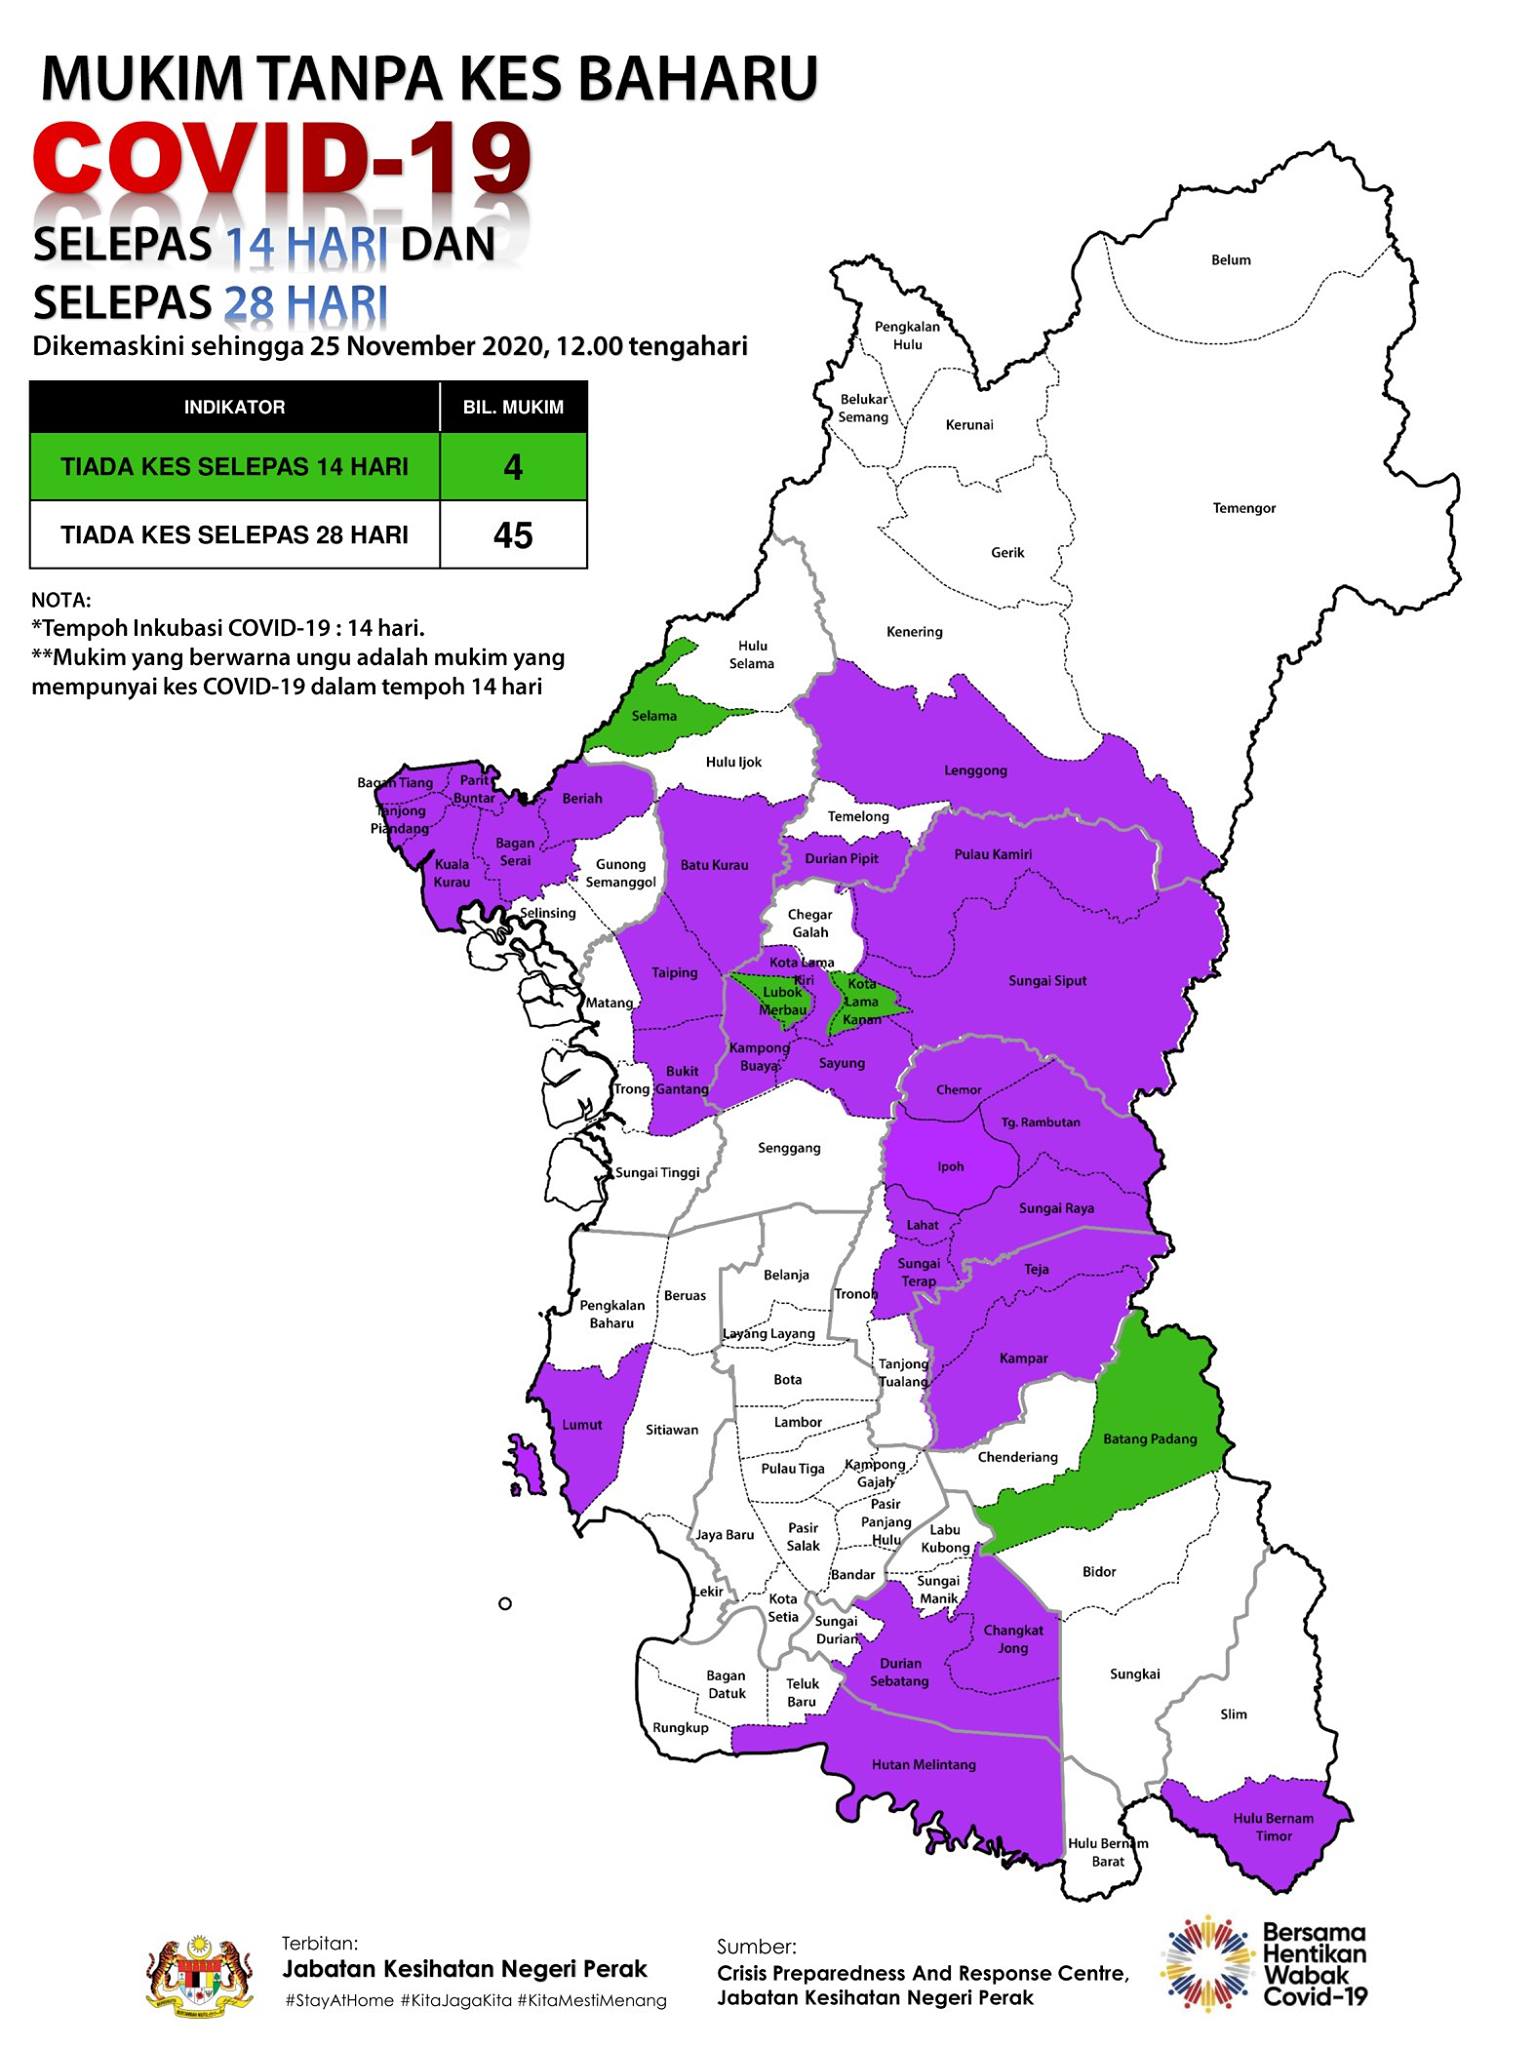 霹州迄今共有29个冠病紫区、4个绿区及45个白区。